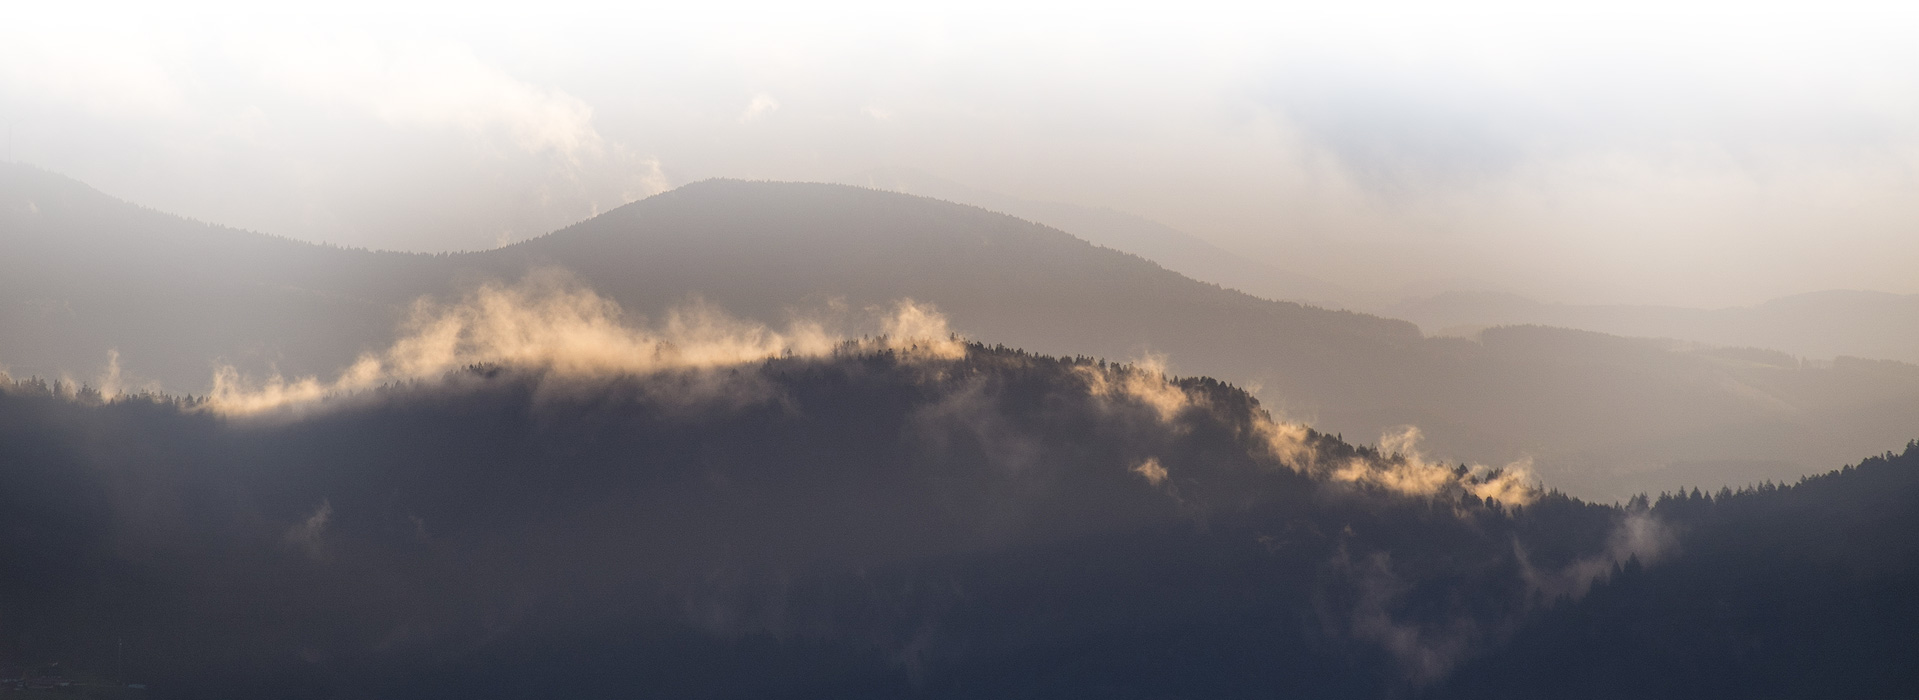 Von einem dunklen Berghang steigt Nebel auf. Der Nebel wird angeleuchtet, im Hintergrund sind weitere Berg zu erahnen.